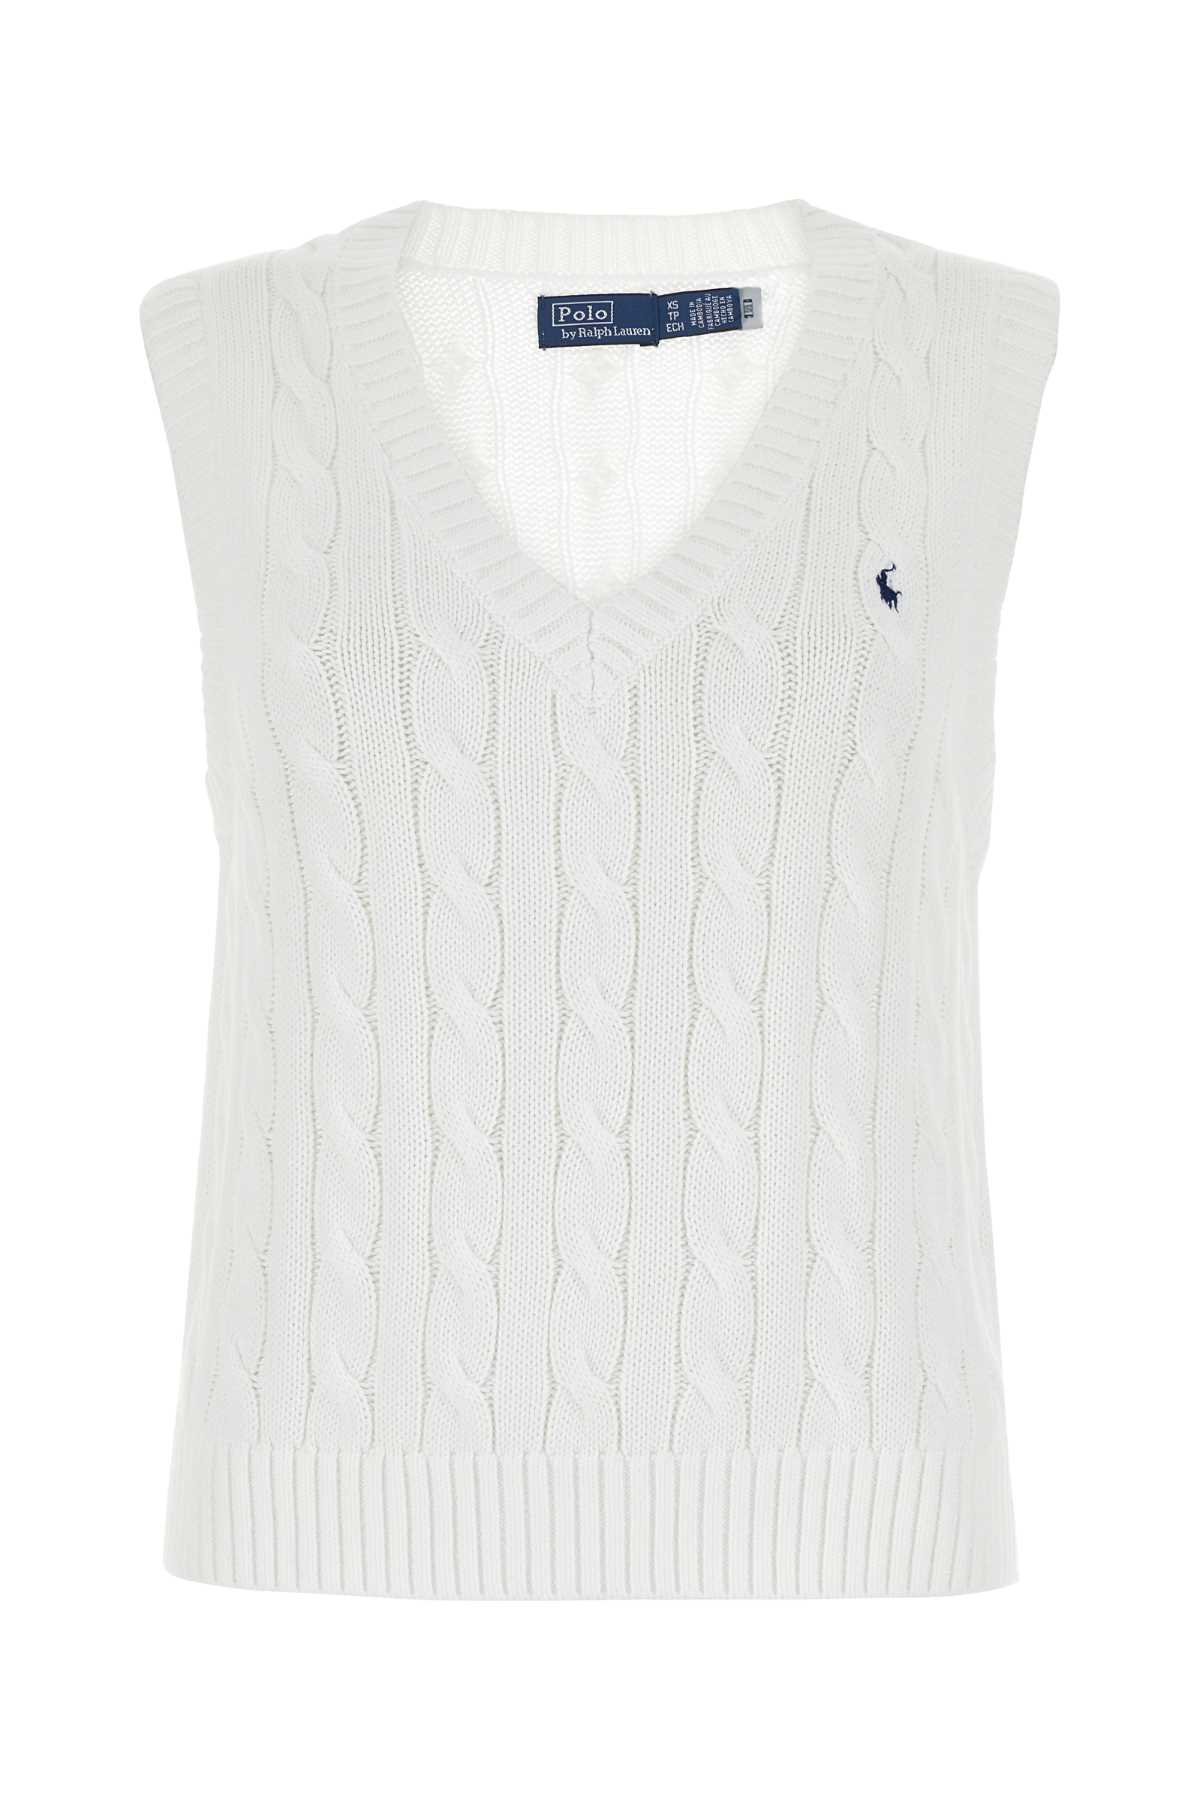 Shop Polo Ralph Lauren White Cotton Vest